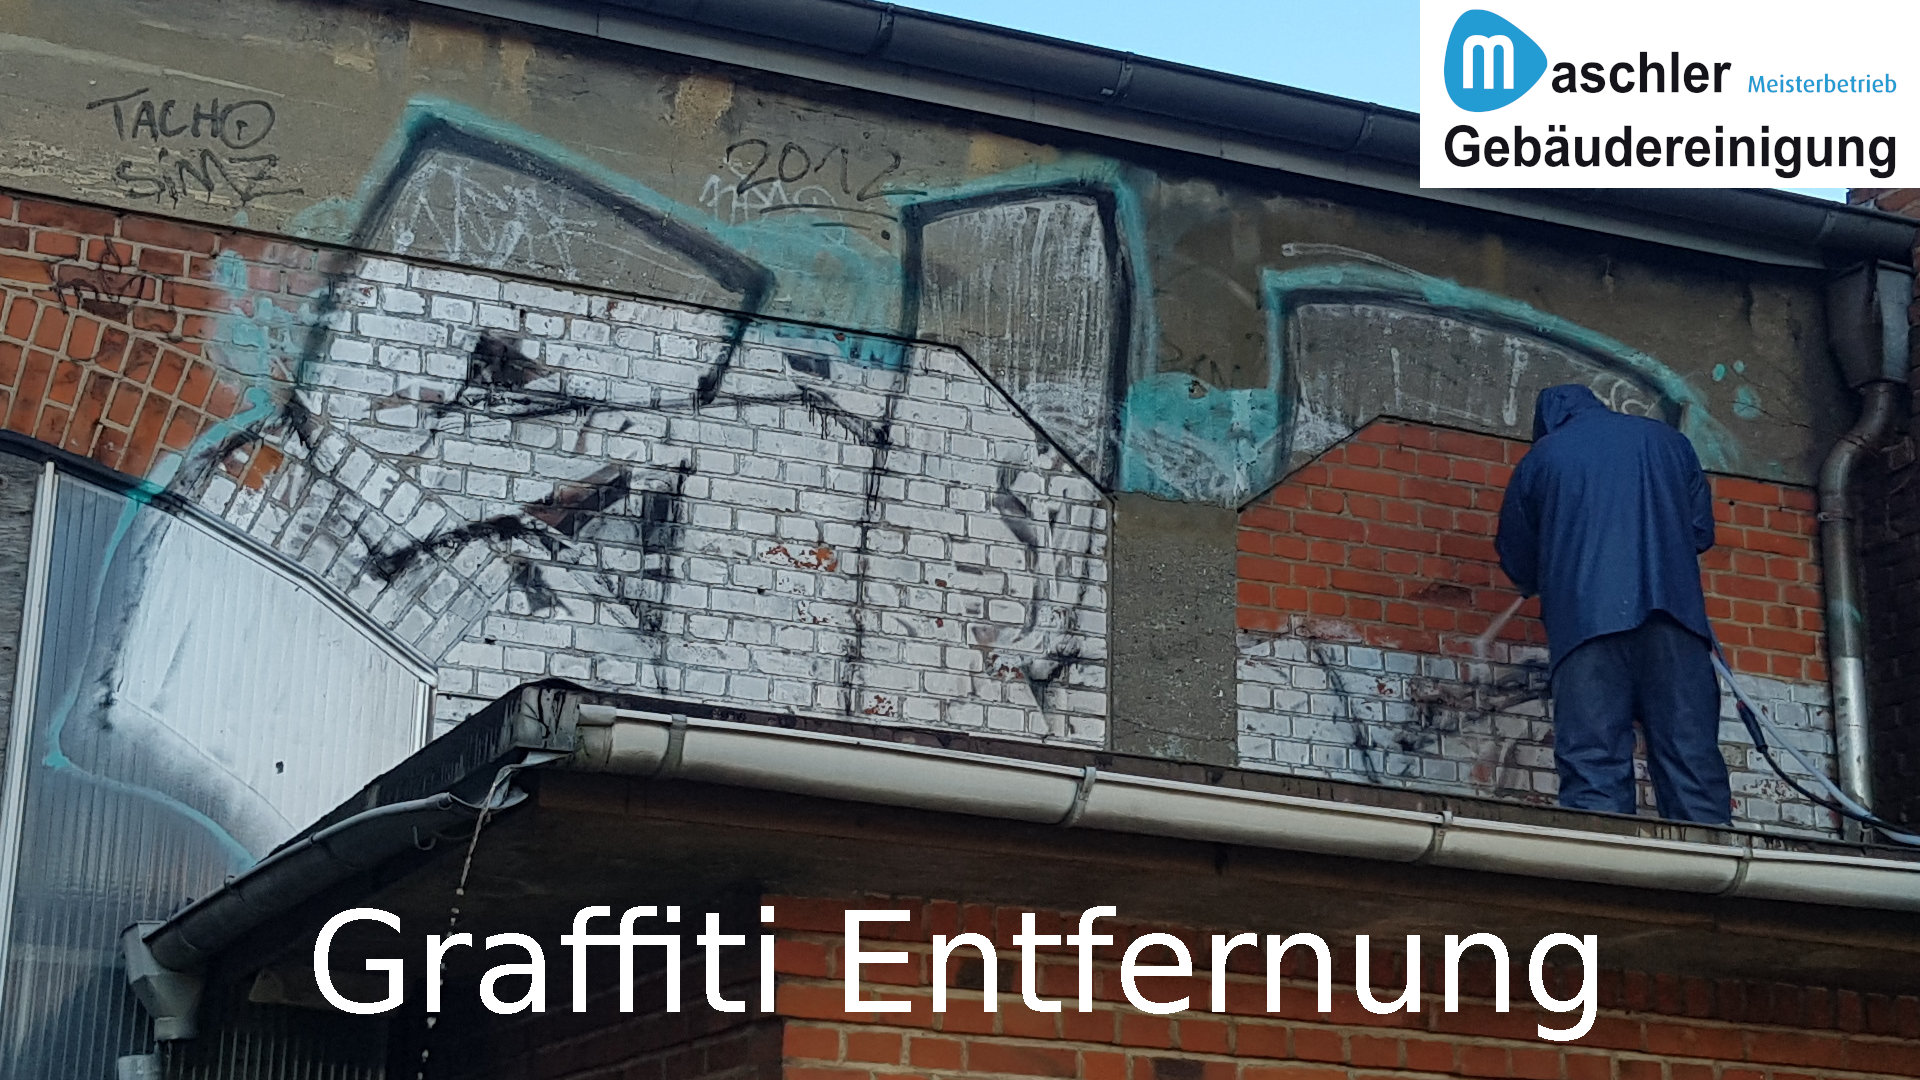 Graffitientfernung - Gebäudereinigung Maschler Schwerin